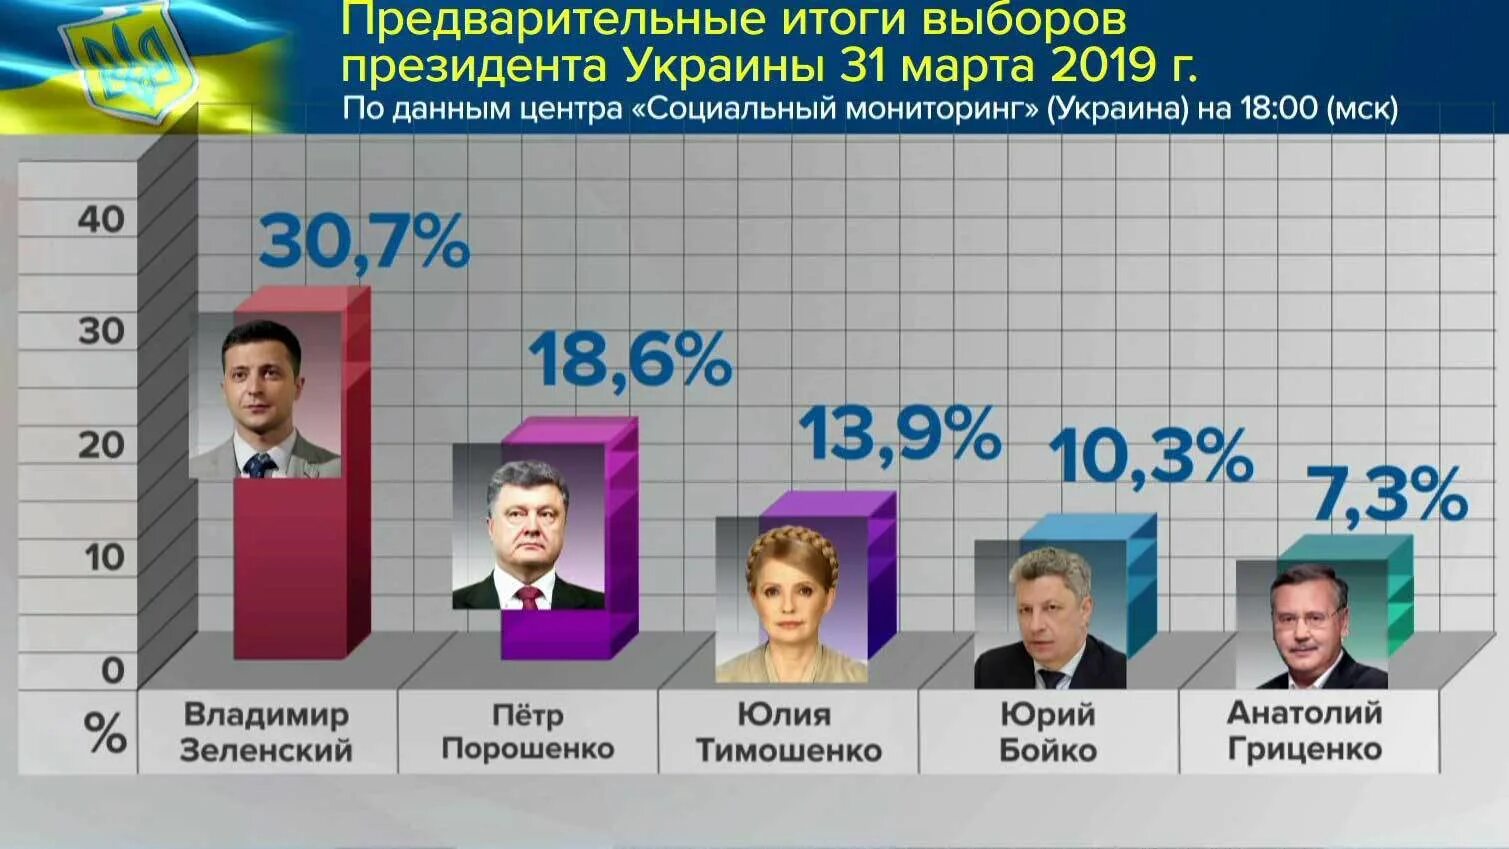 Выборы президента Украины. Выборы президента. Следующие выборы президента Украины. В 2019. Итоги президентских выборов в Украине.